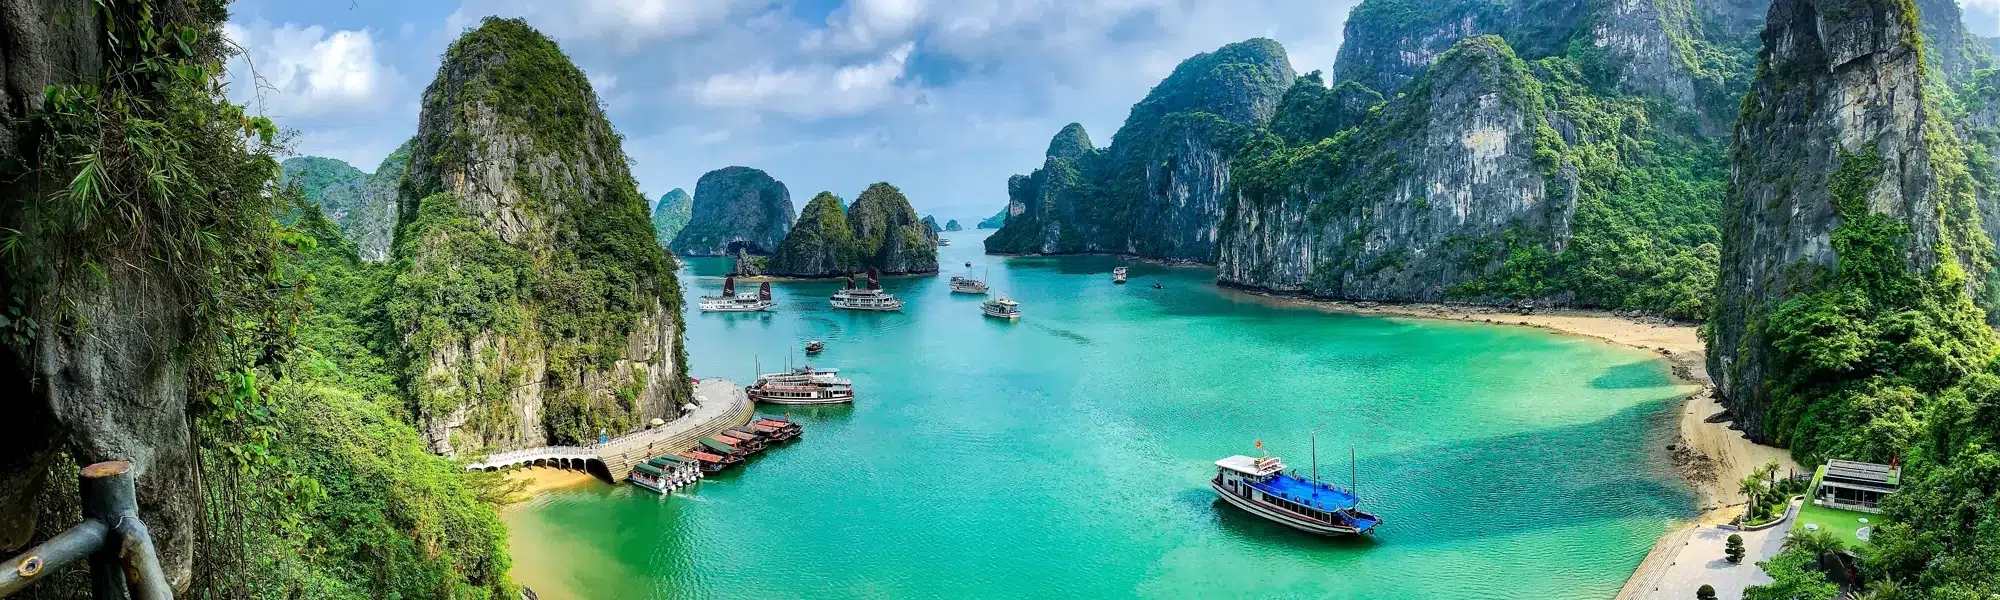 Noord-Vietnam - Ha Long Bay